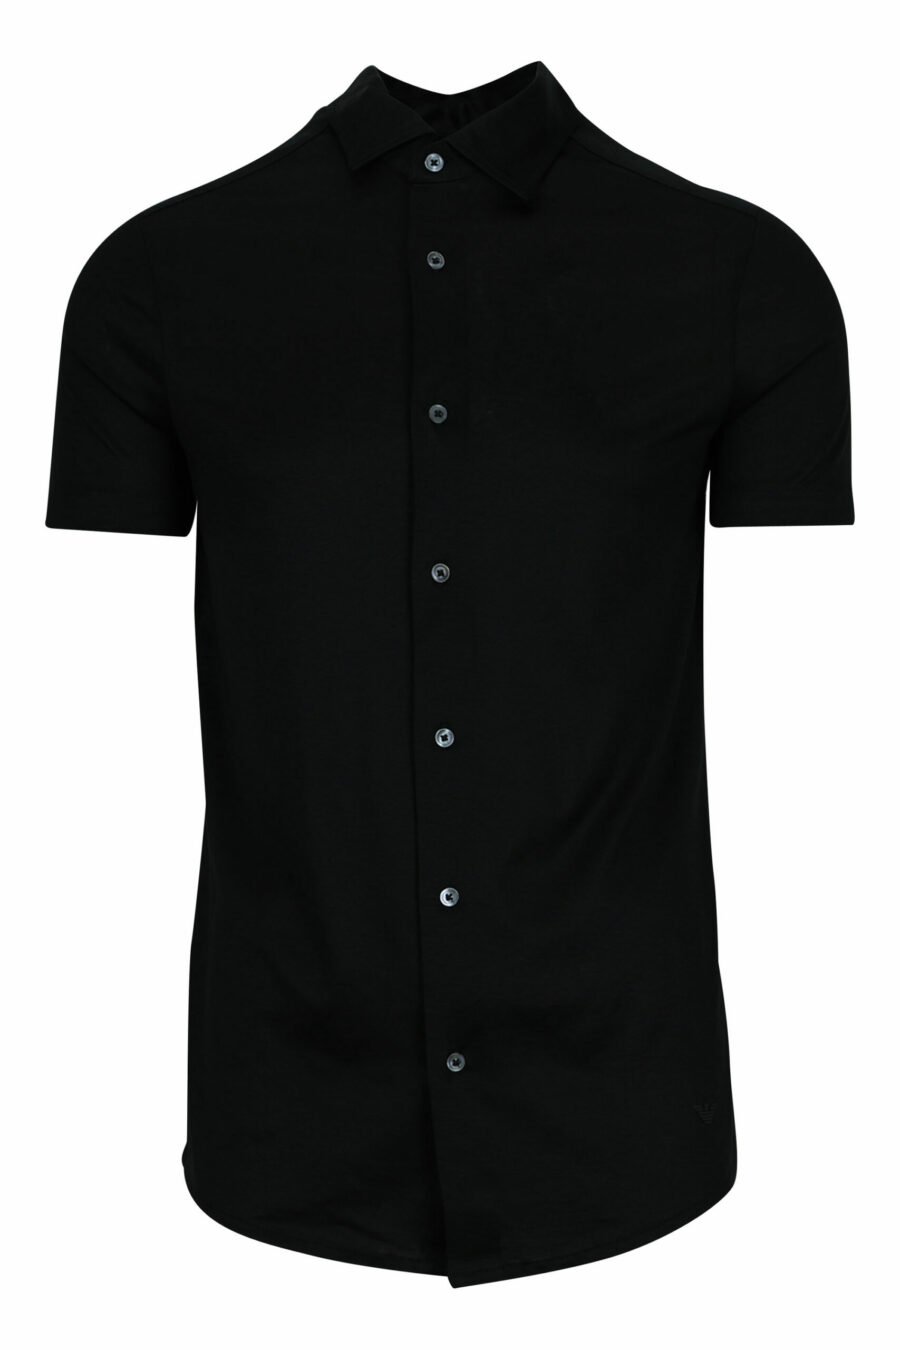 Black short sleeve shirt with eagle mini logo - 8056861420206 scaled